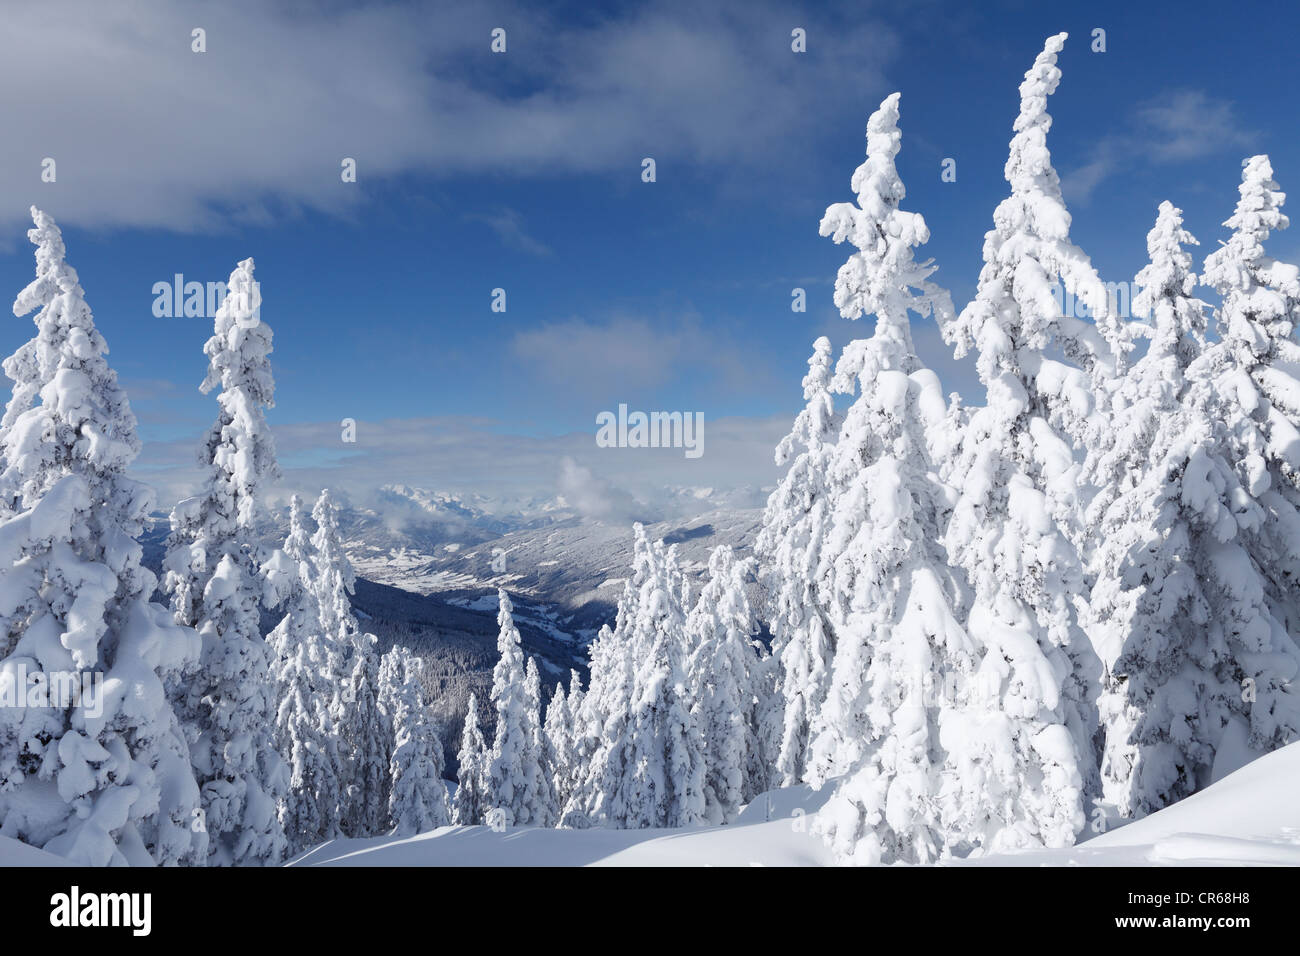 Austria Salzburg County, in vista della coperta di neve abeti sulla montagna Foto Stock